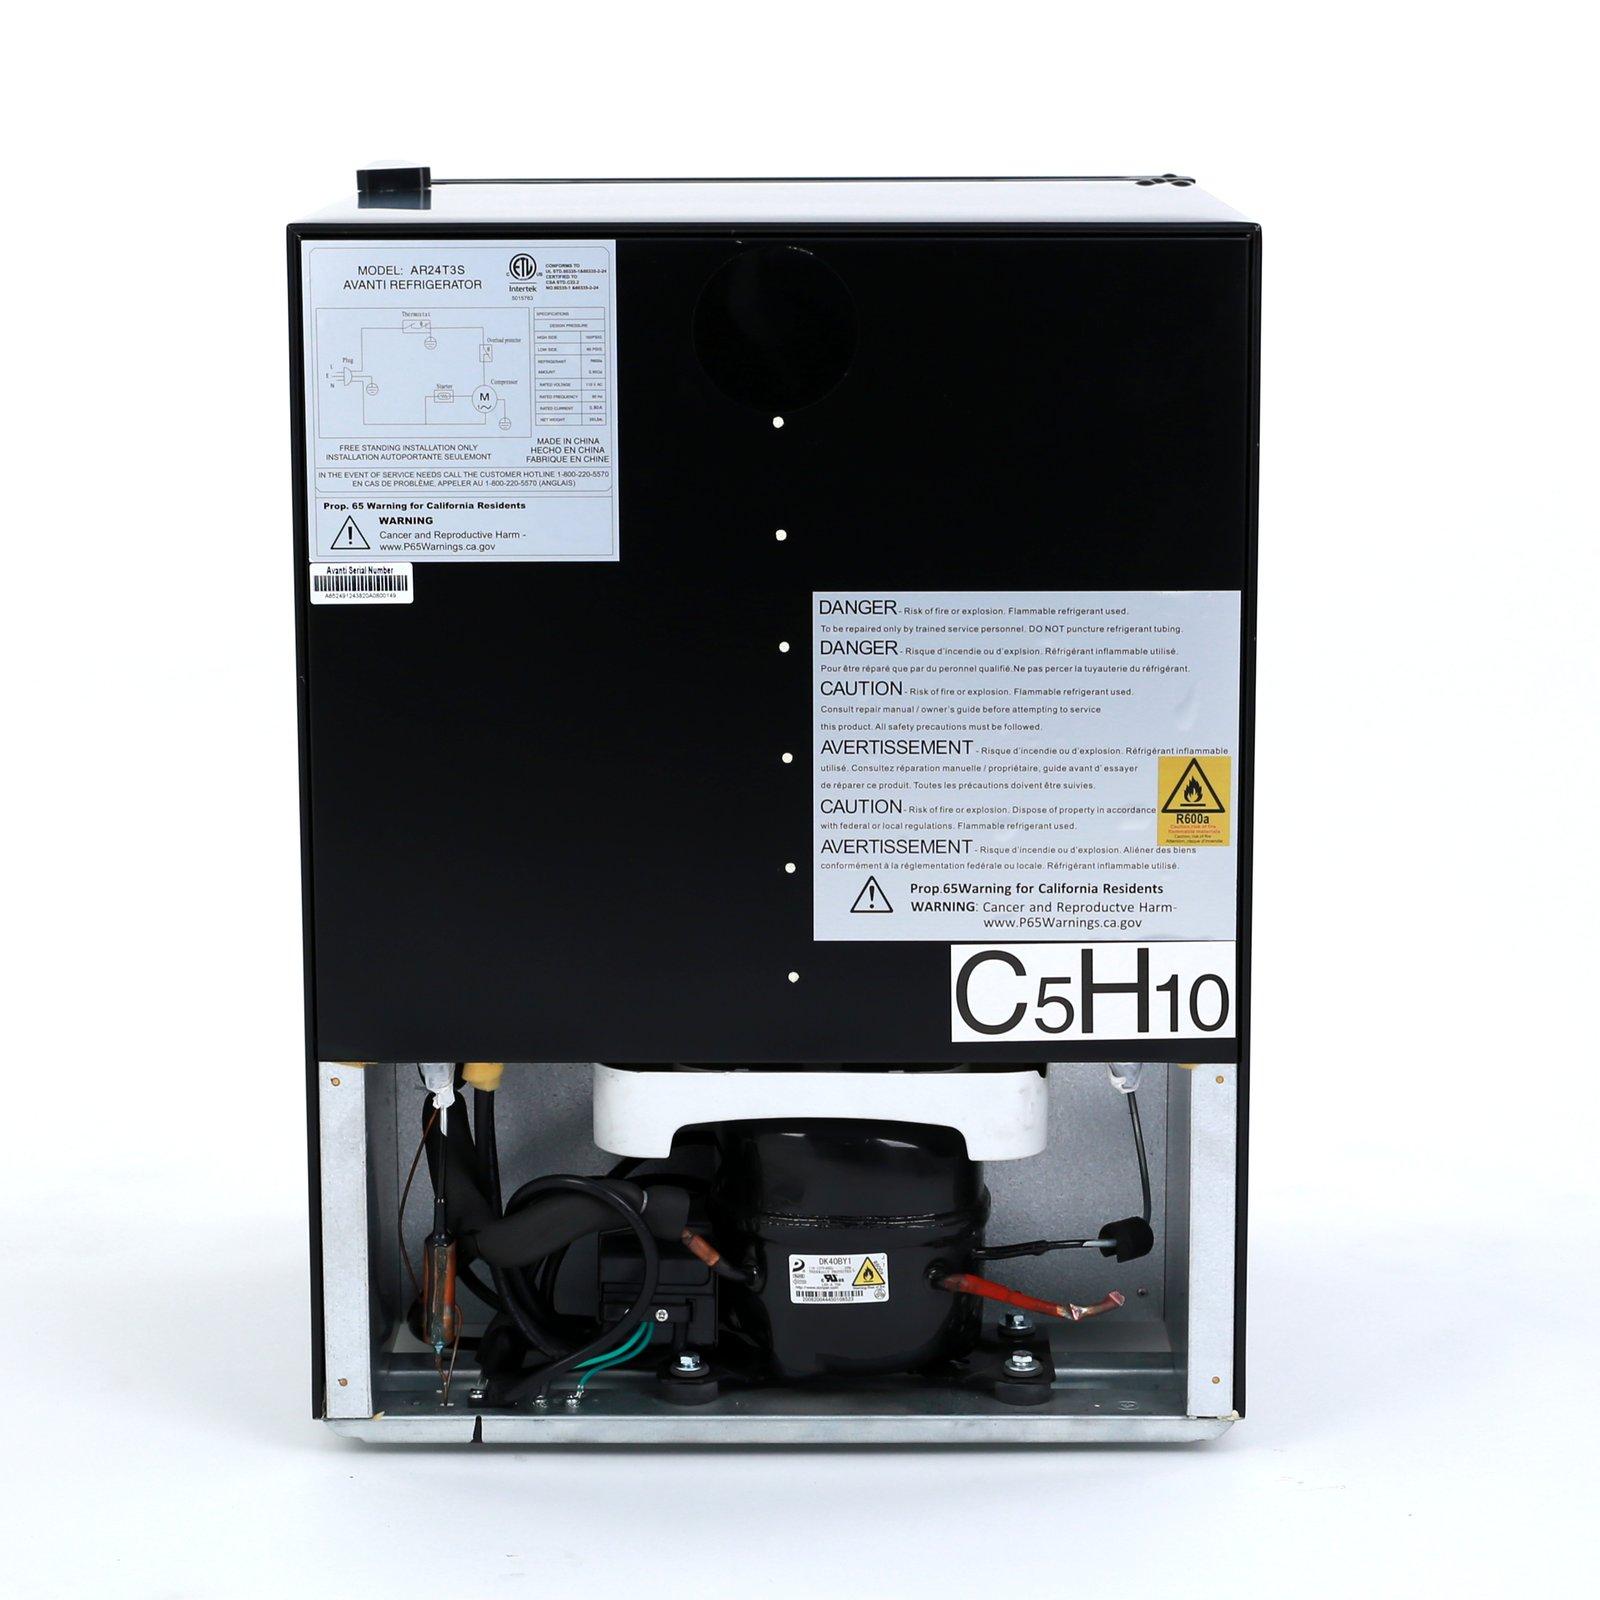 AVANTI AR24T3S 2.4 cu. ft. Compact Refrigerator